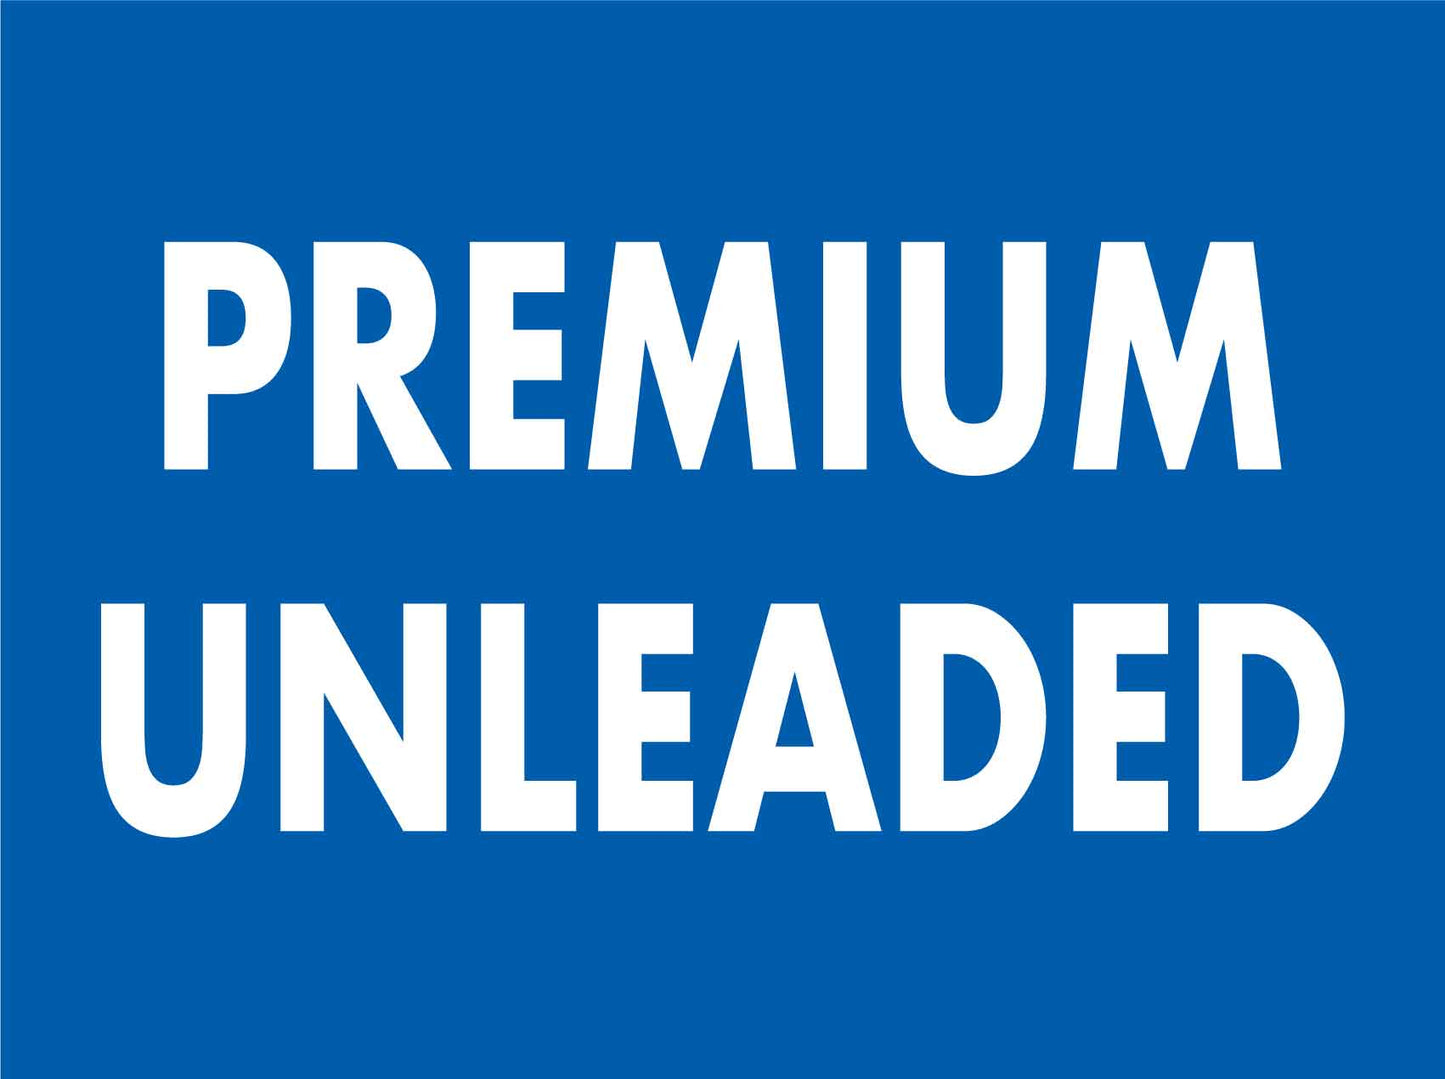 Premium Unleaded Sign